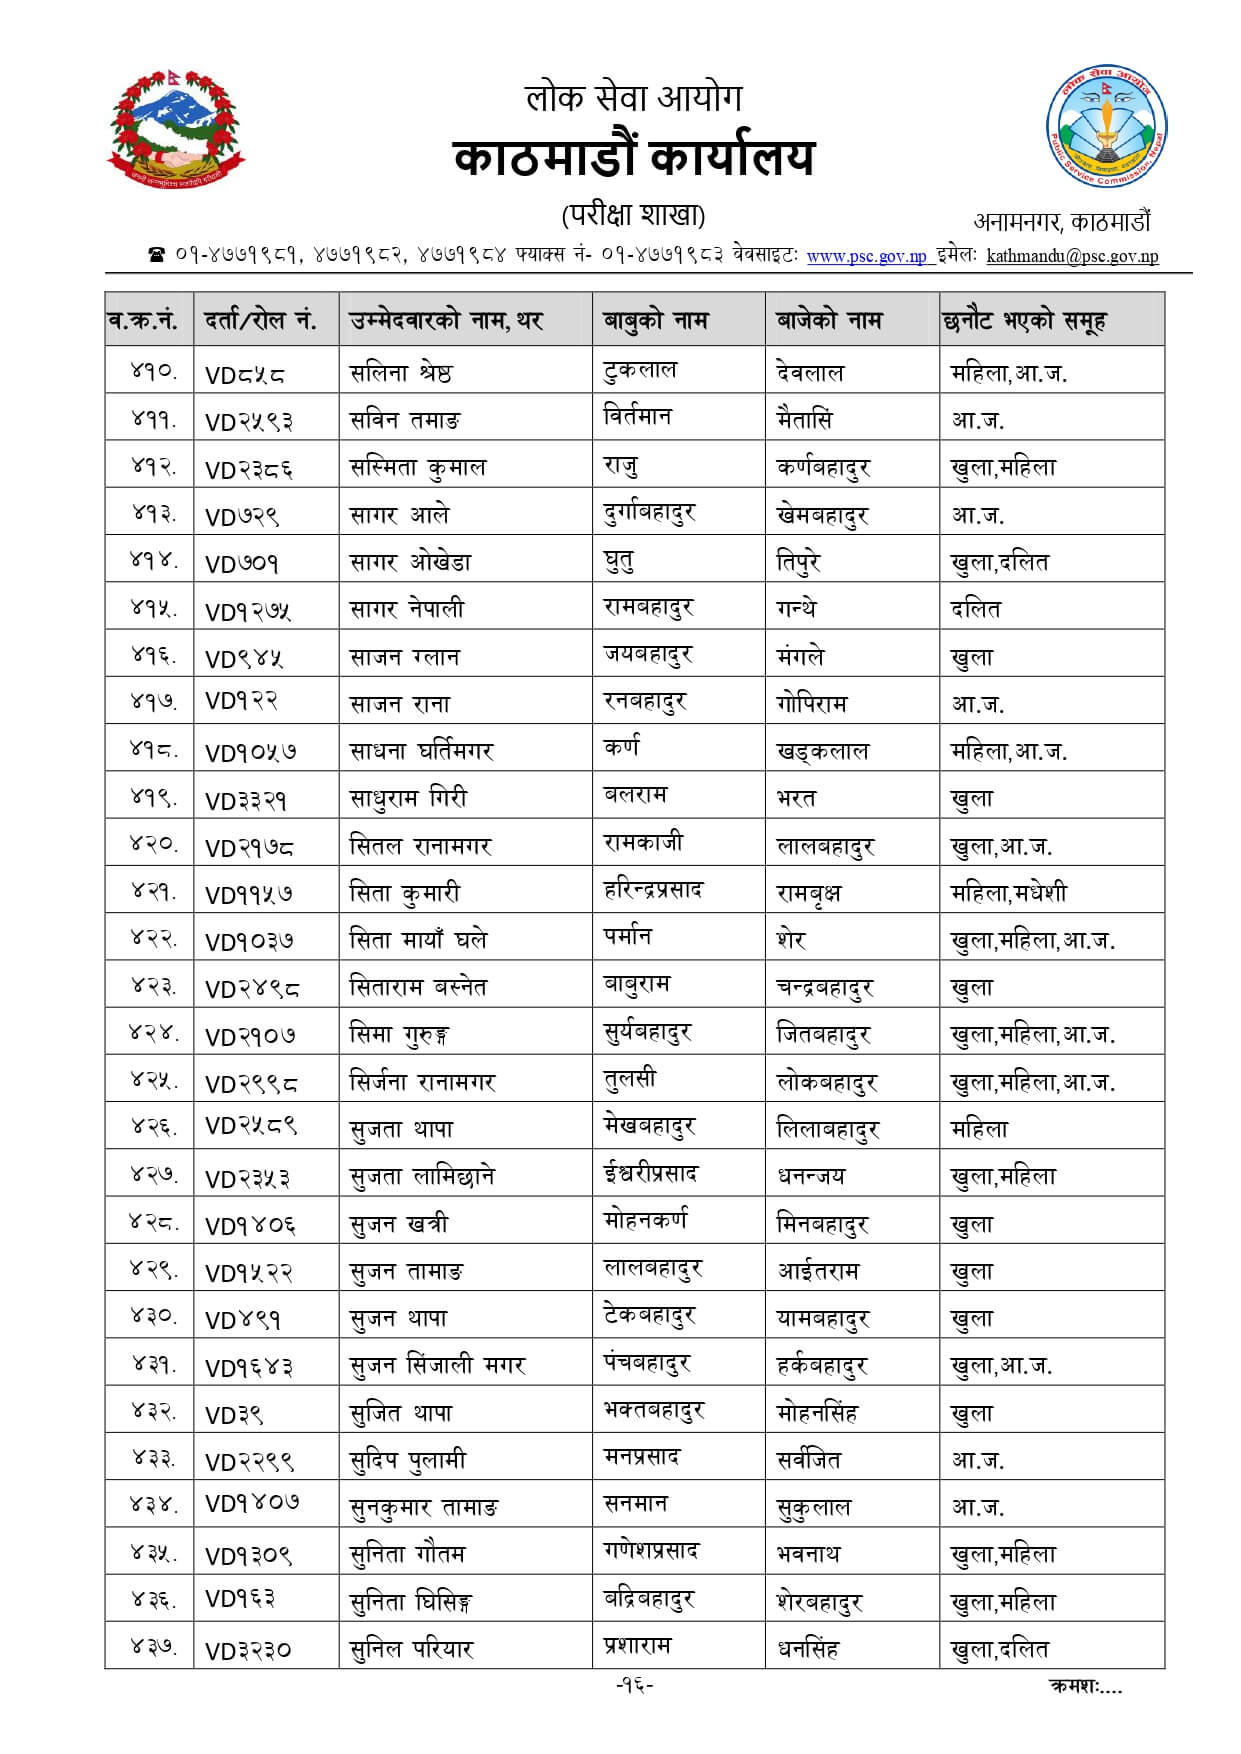 Nepal Army Sainya Written Exam Result Narayanhiti Kathmandu. Nepal Army Sainya Exam Result nepalarmy.gov.np nepalarmy.mil.np nepalarmy.com.np nepalarmy.com